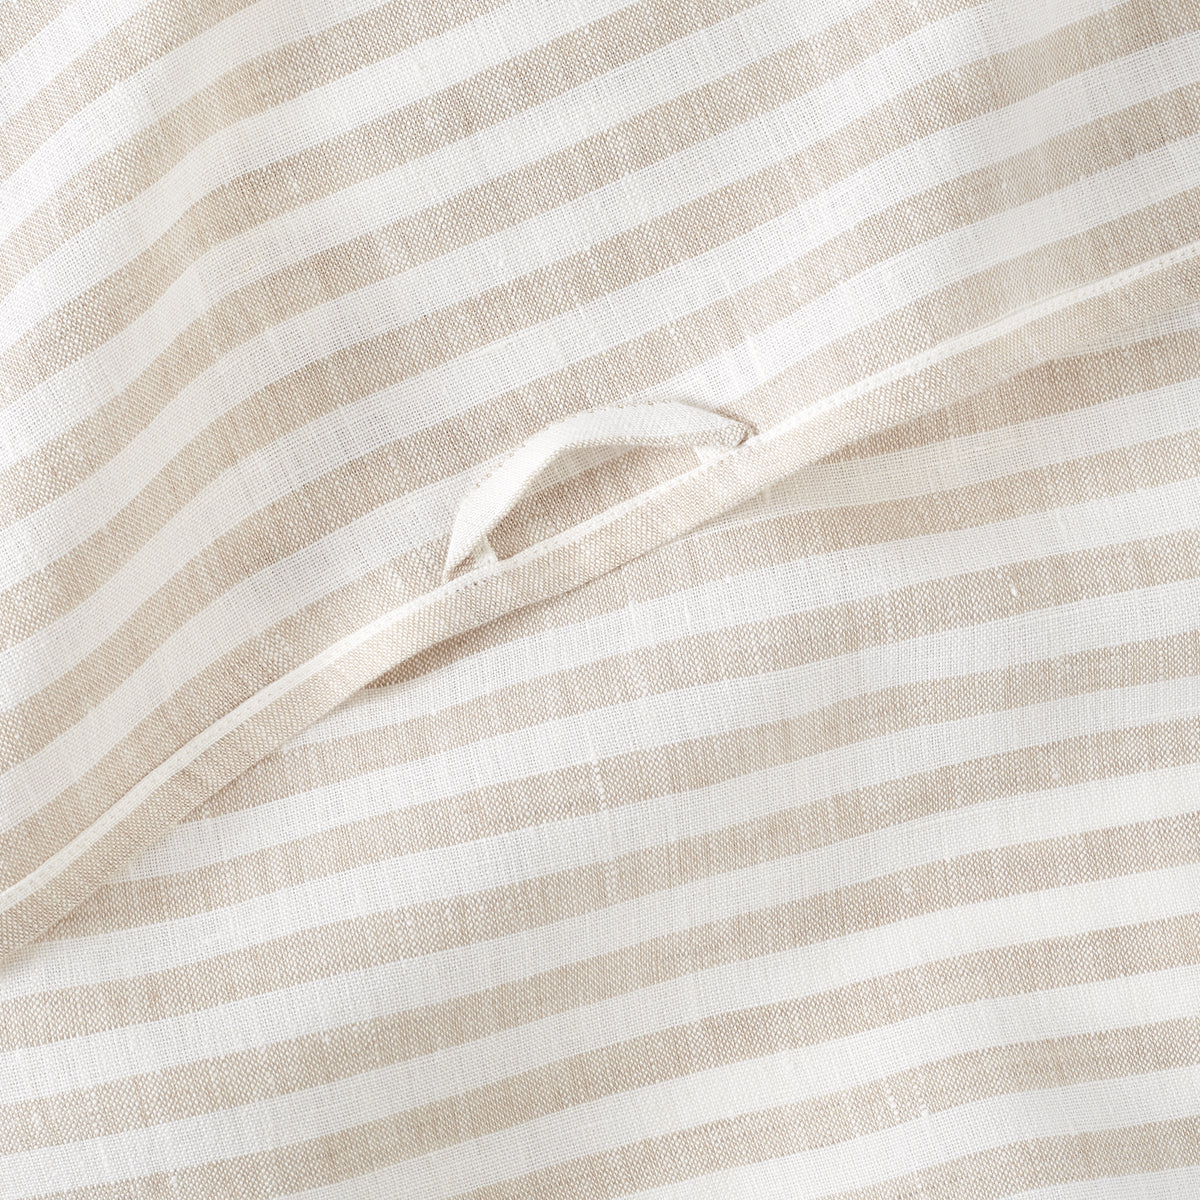 100% Pure Linen Table Napkins / Tea Towels